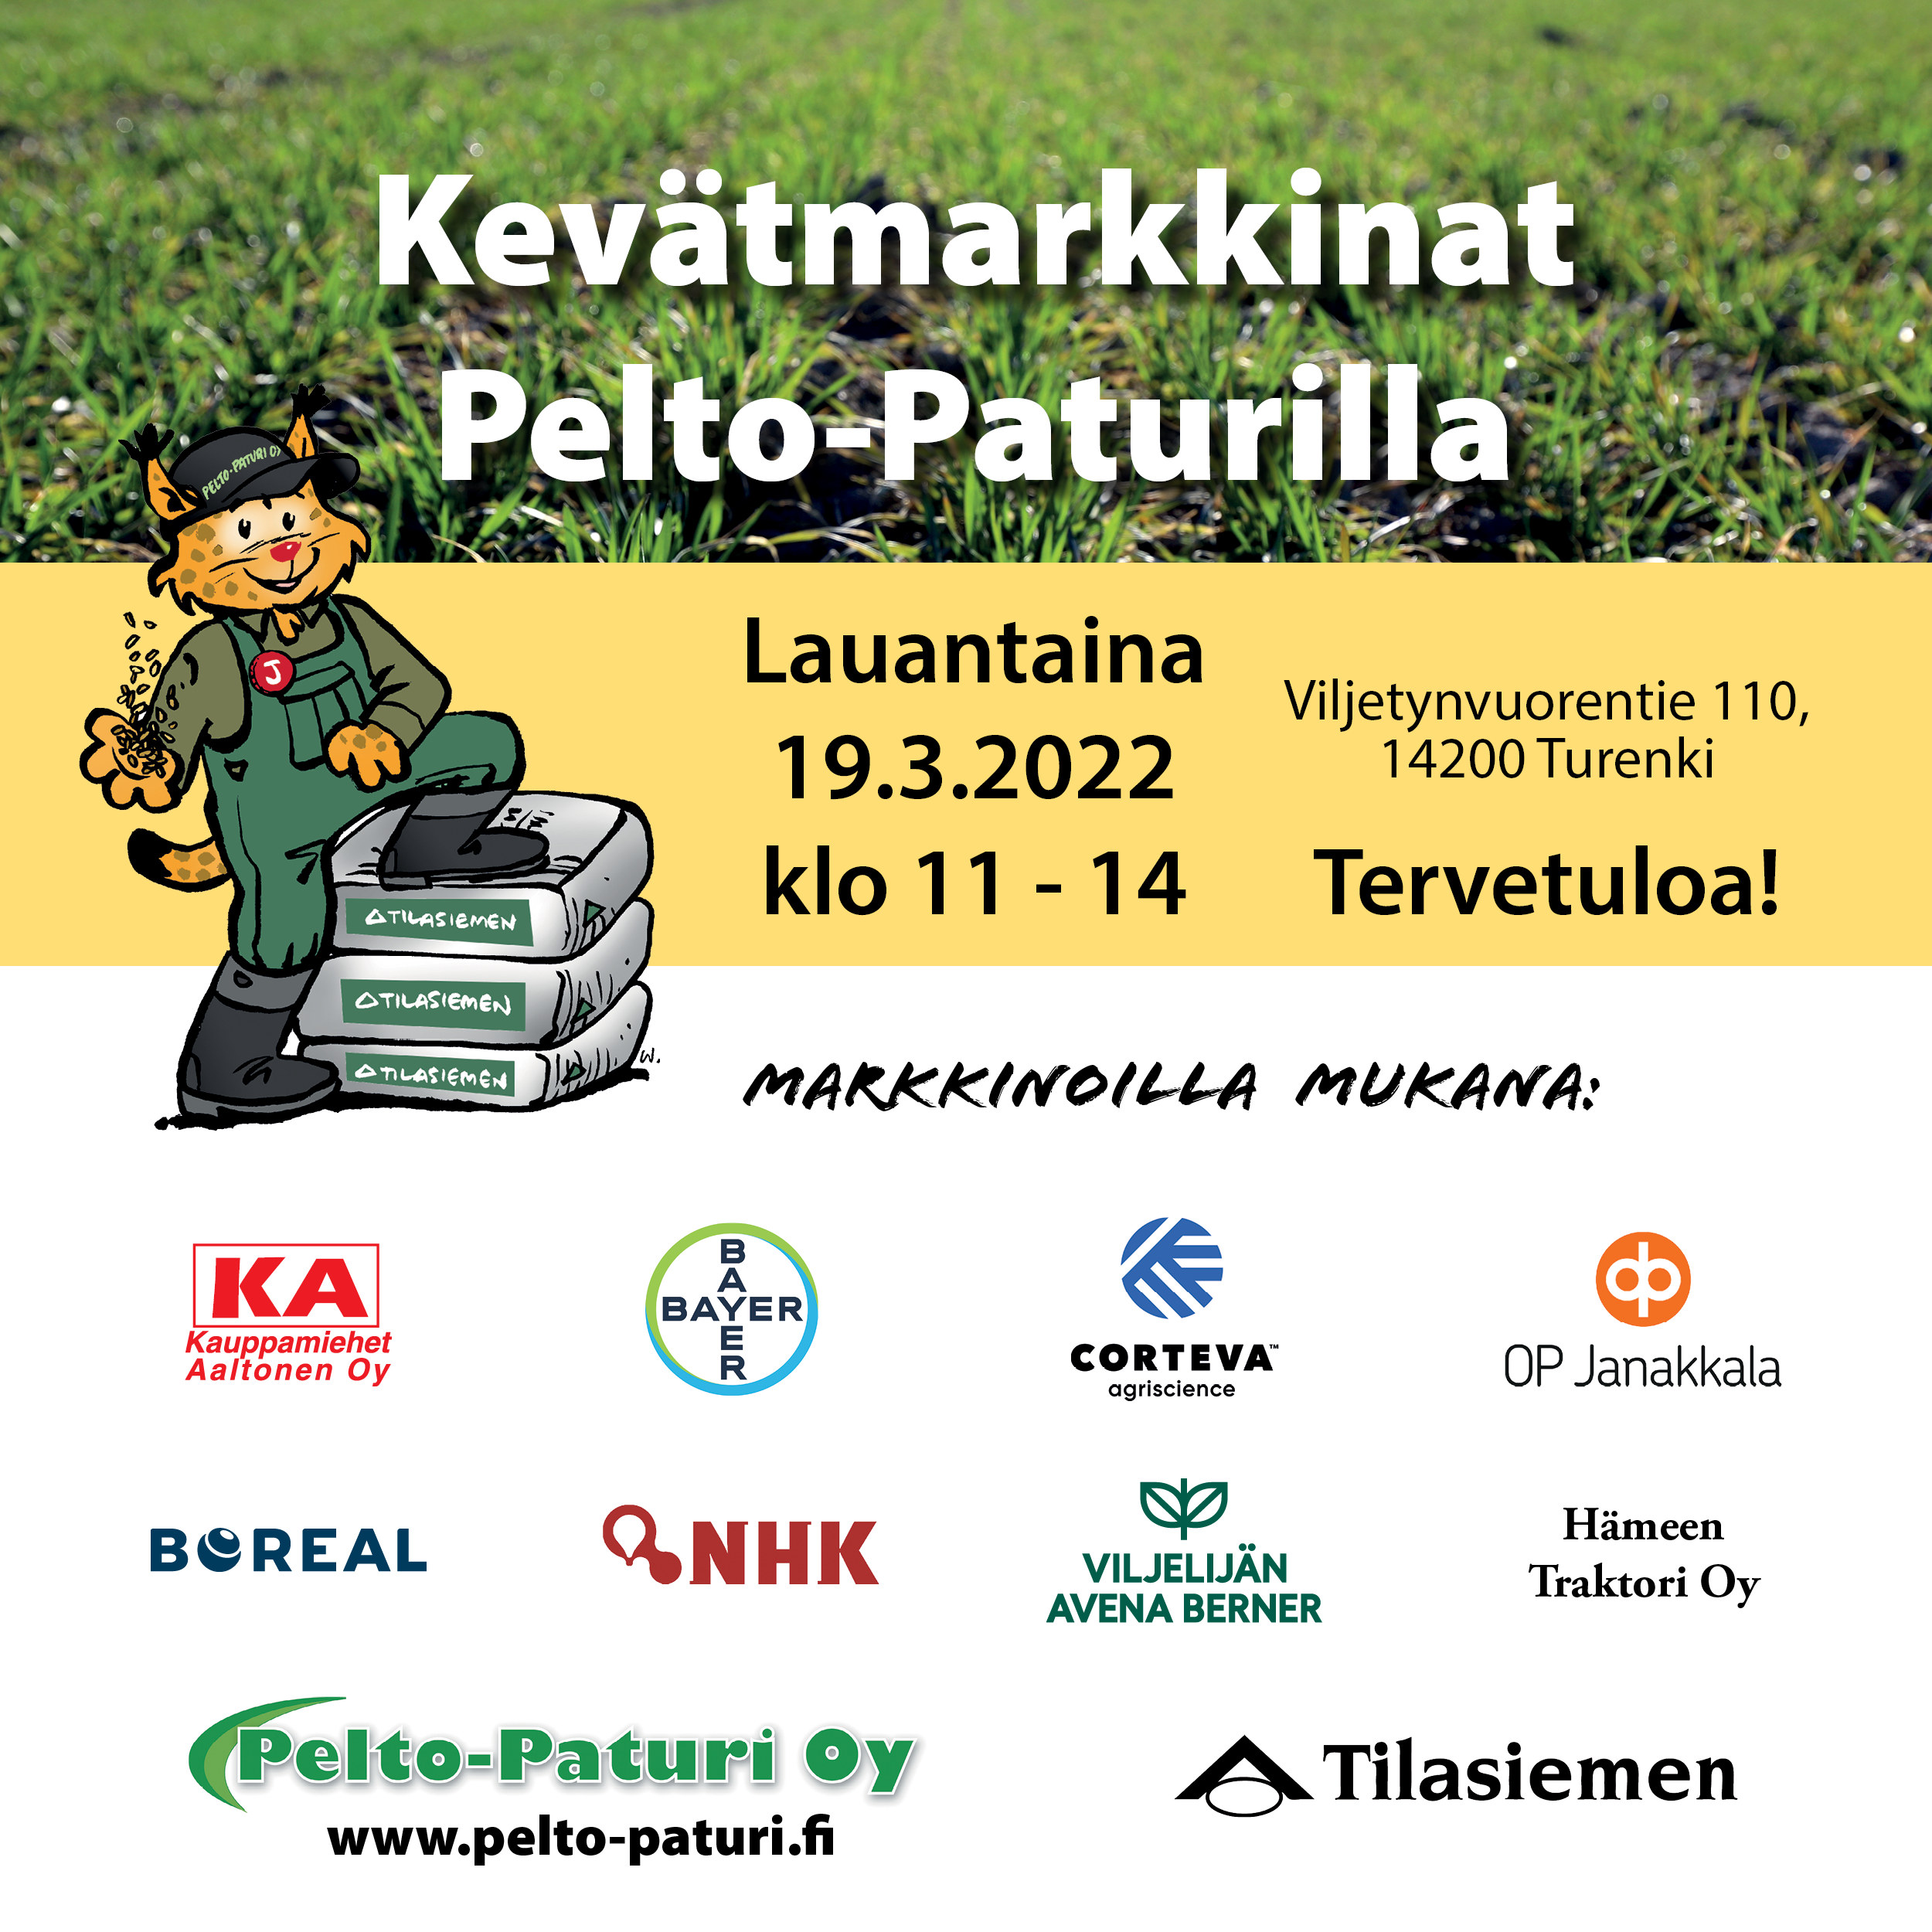 Kevätmarkkina Pelto-Paturilla 19.2.2022